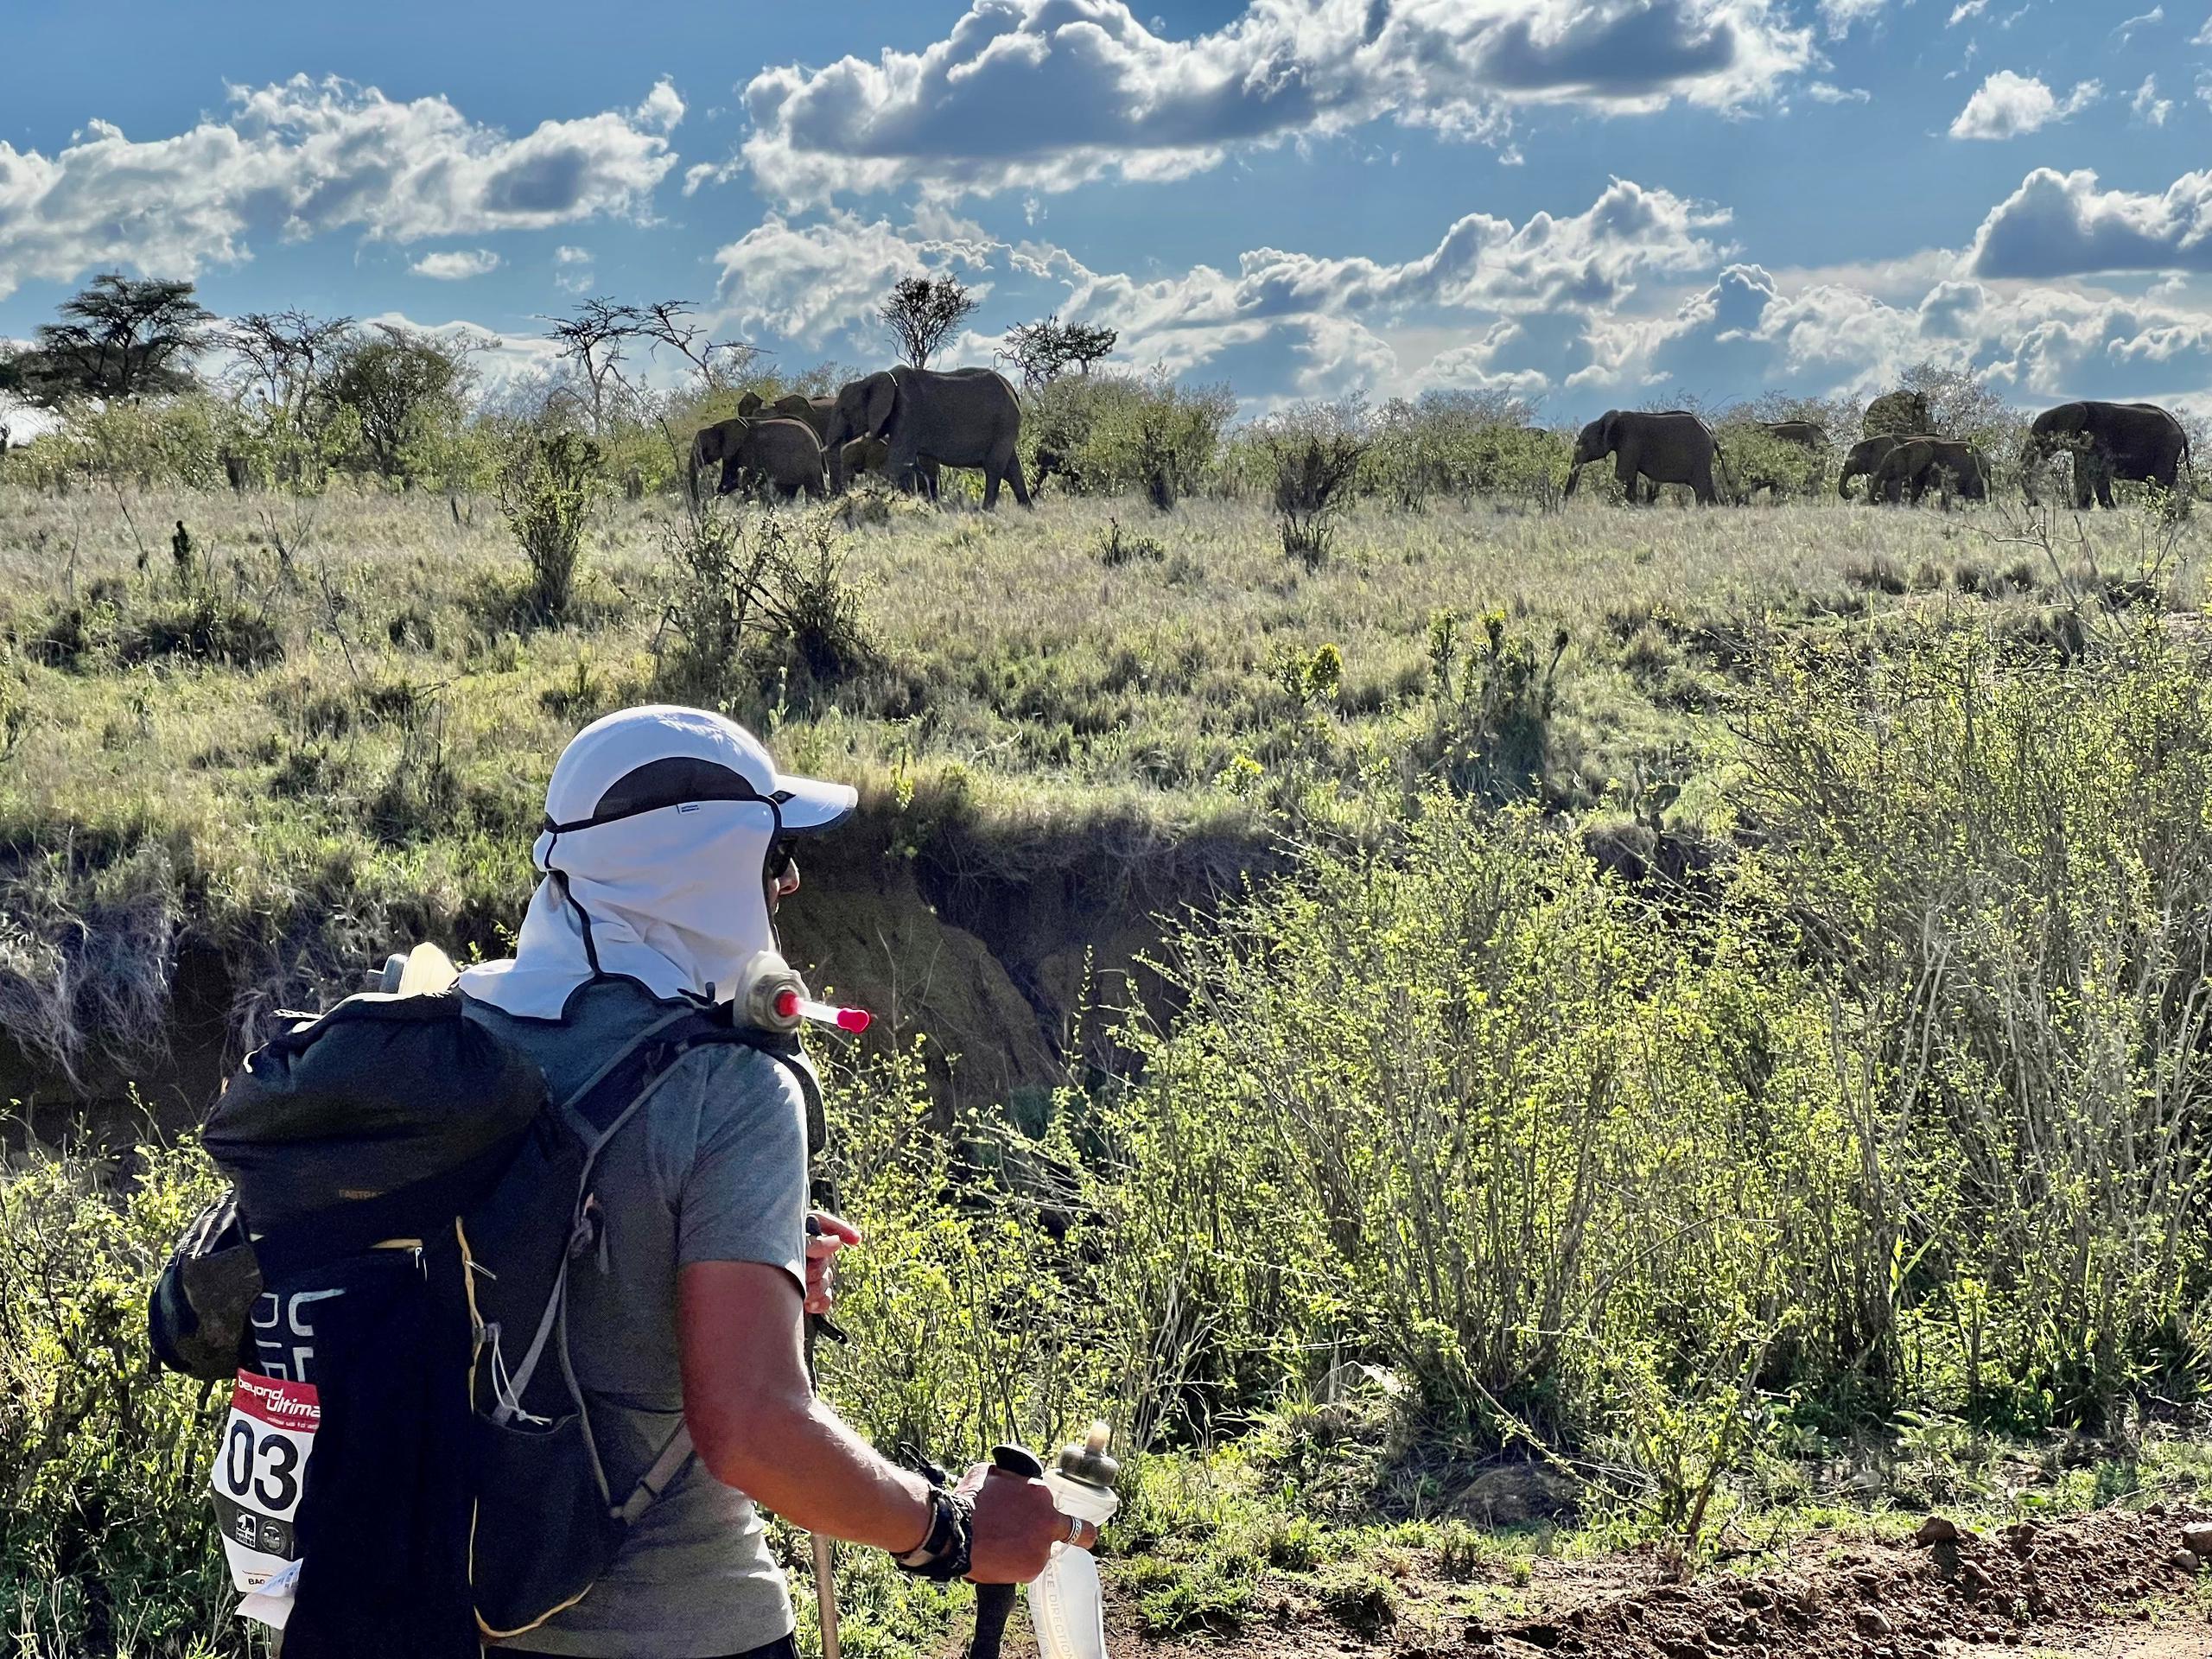 Juan Jordán Saiz aparece aquí caminando cerca de una familia de elefantes.